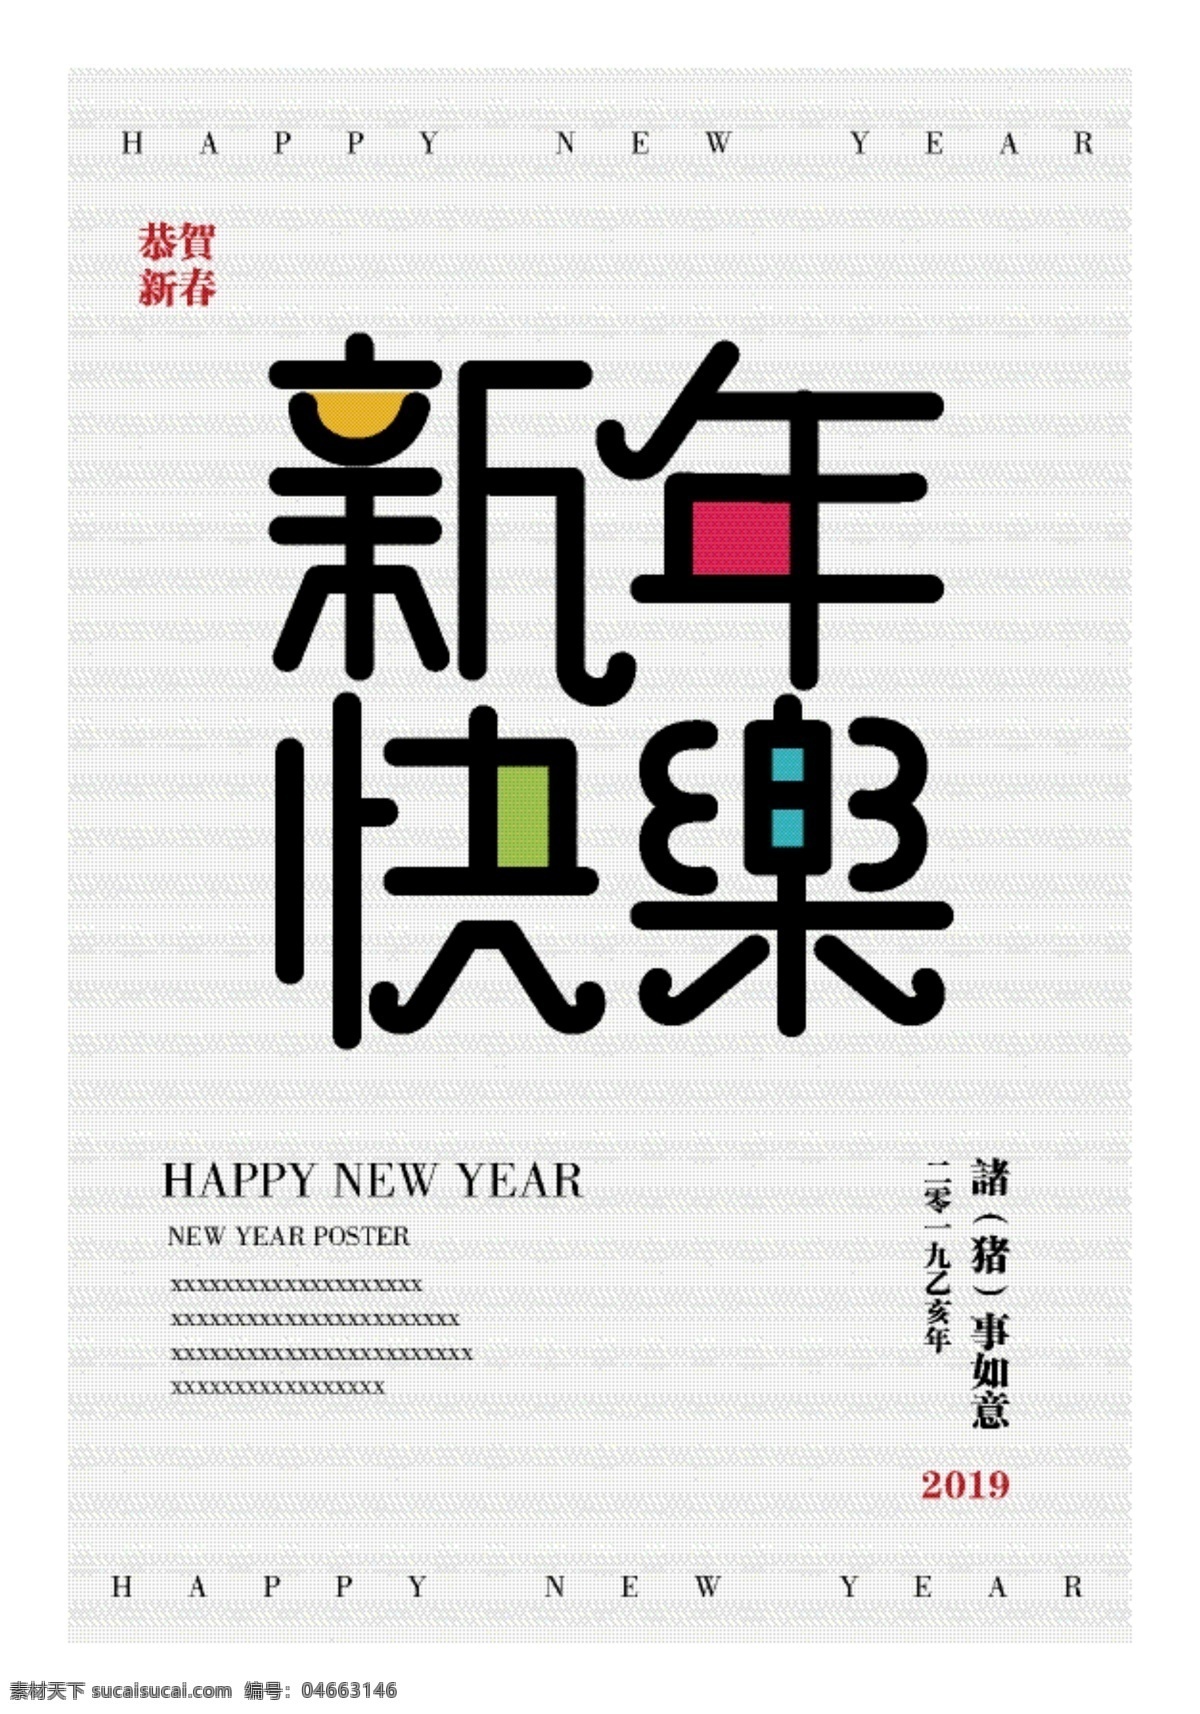 新年 快乐 创意 字体 新年快乐 字体设计 色块 可爱 色彩